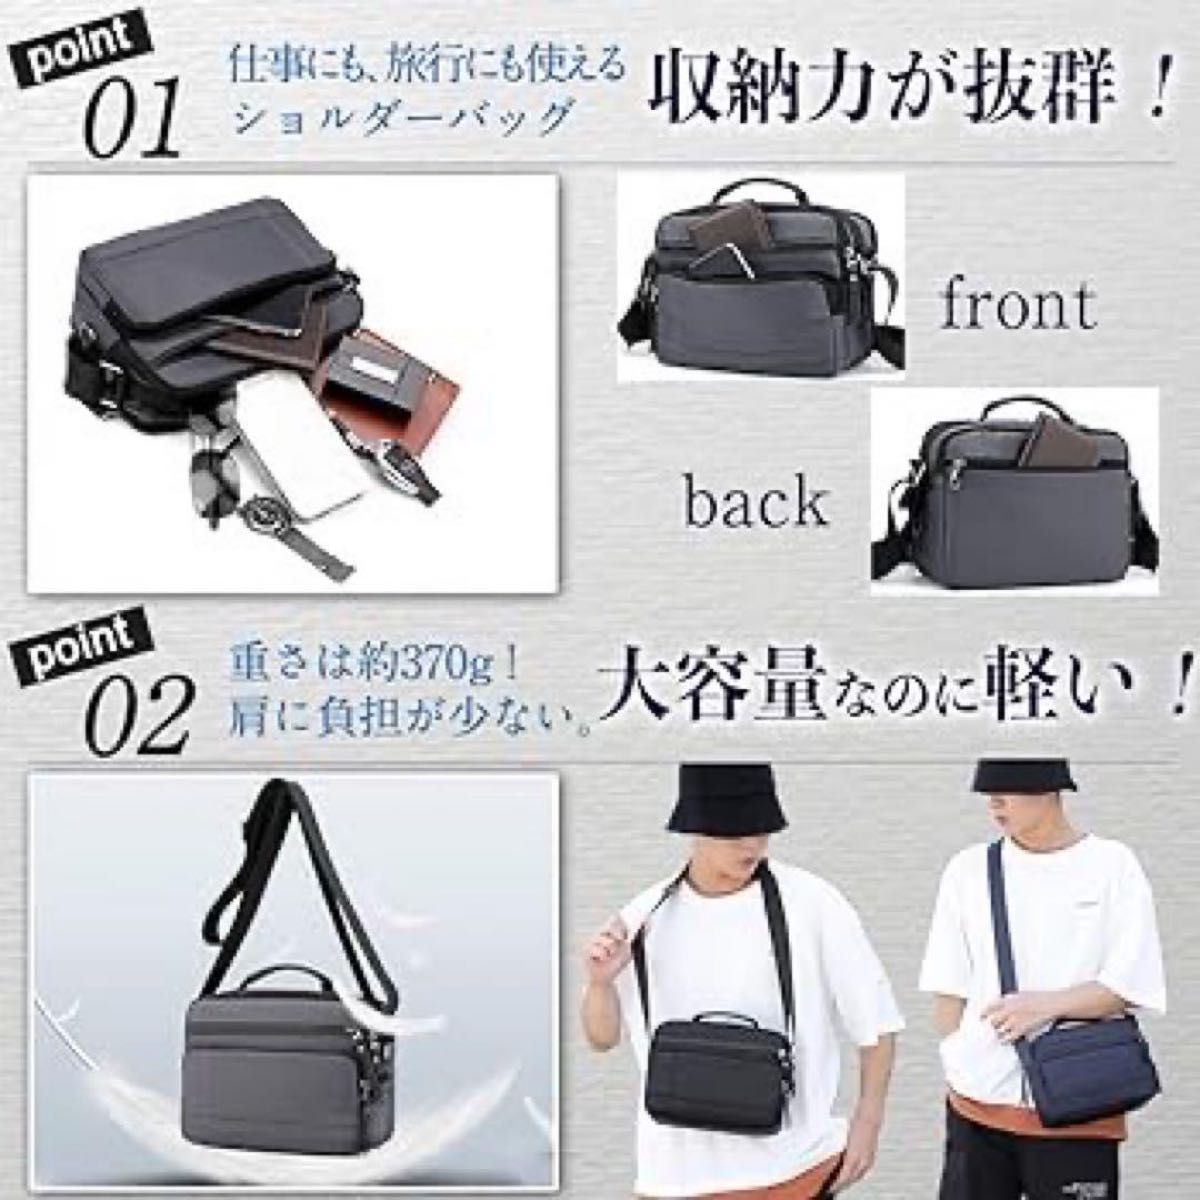 多機能バッグ ネイビー 日本企画 ショルダー 肩掛け ショルダーバッグ 通勤 通学  普段使い デート お出かけに ボディバッグ 